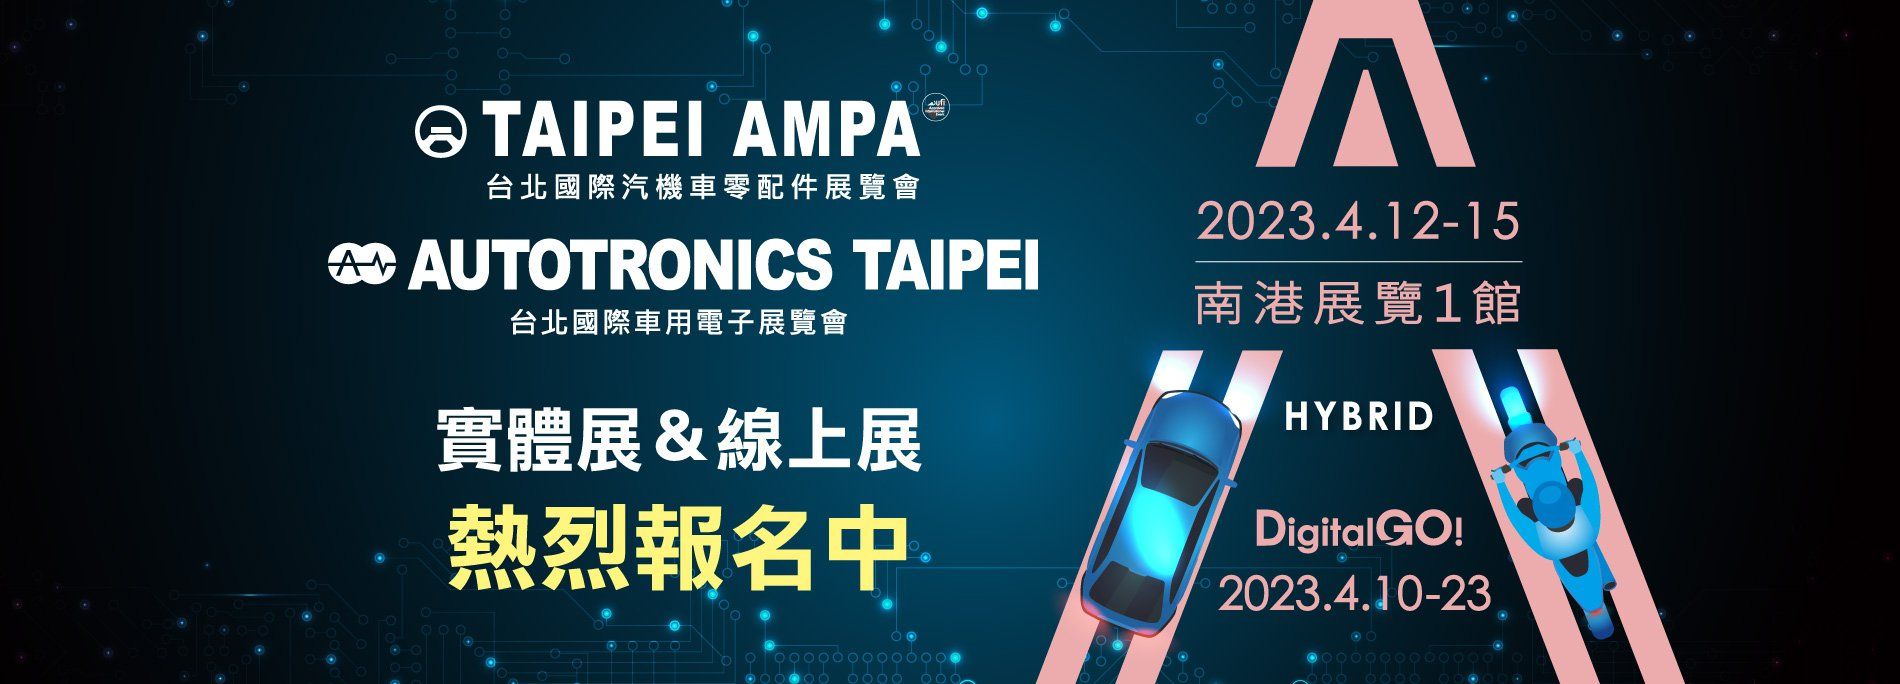 Taipei AMPA 2023.